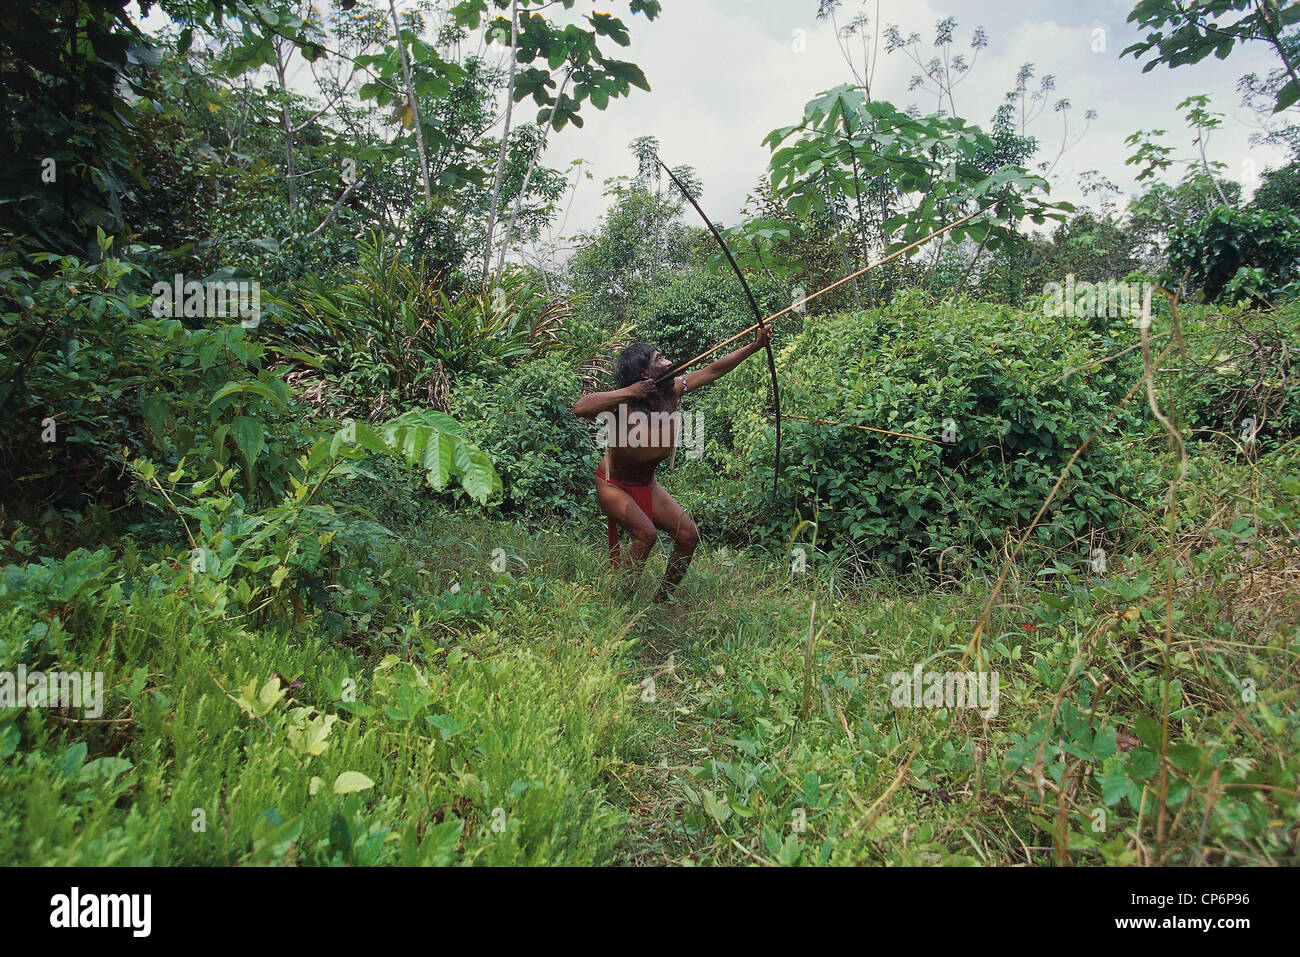 Venezuela Guayana Amazonas, near Rio Siapa. Indio Yanomami tribe Cavaroa hunting in forest. man in act of shooting arrow with Stock Photo